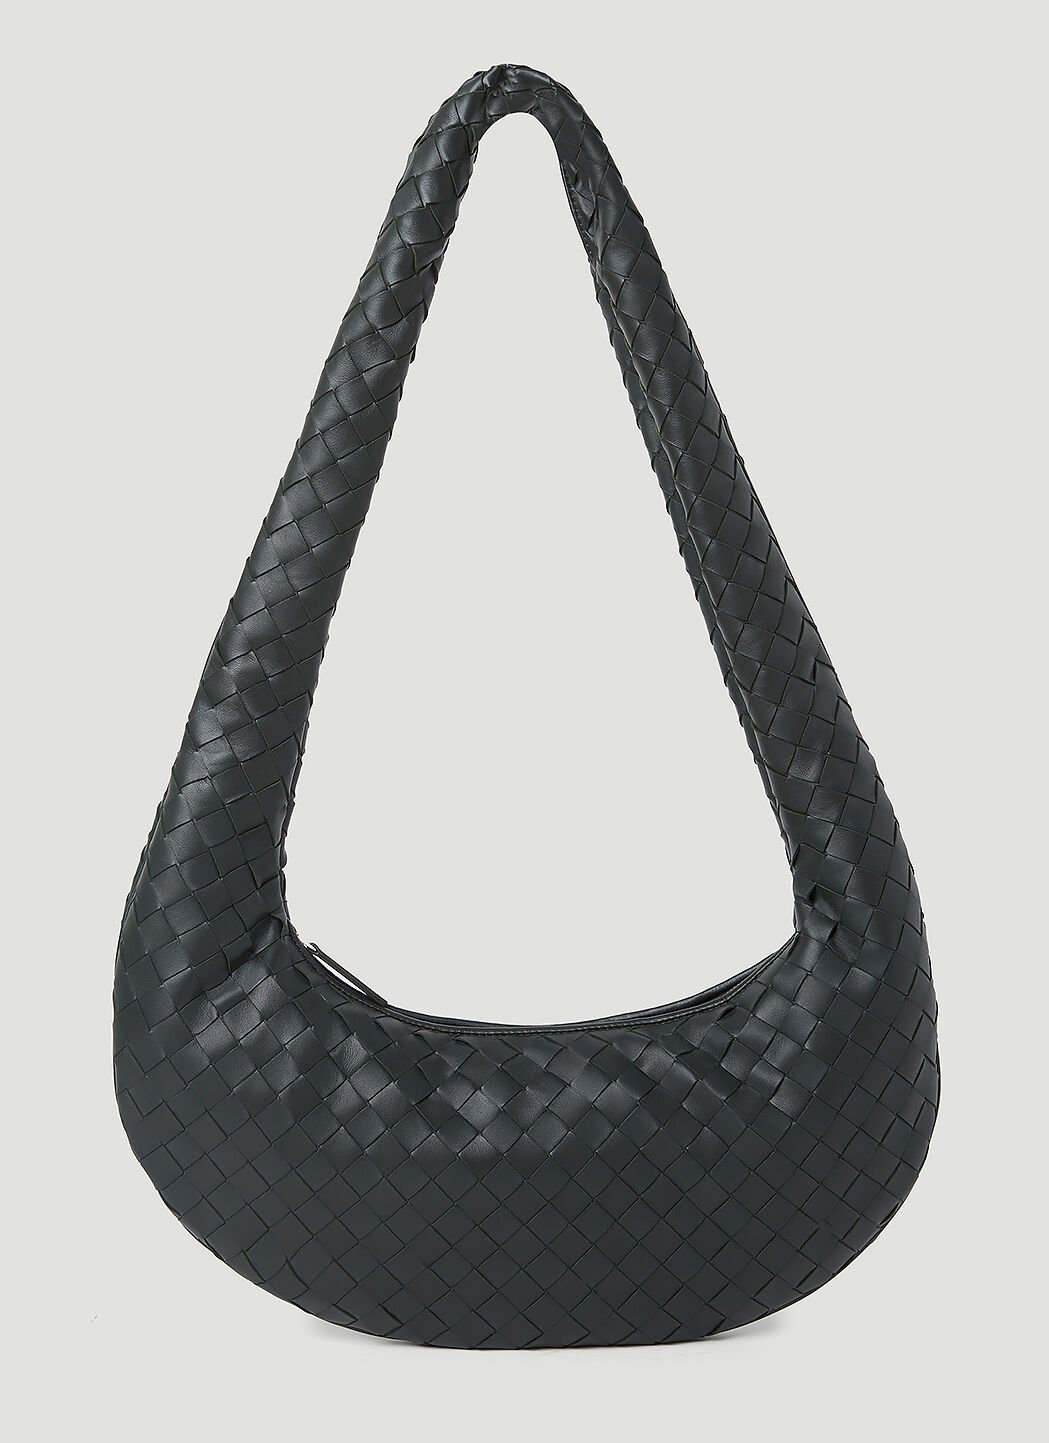 Bottega Veneta Intrecciato Leather Crossbody Bag 黑色 bov0155010